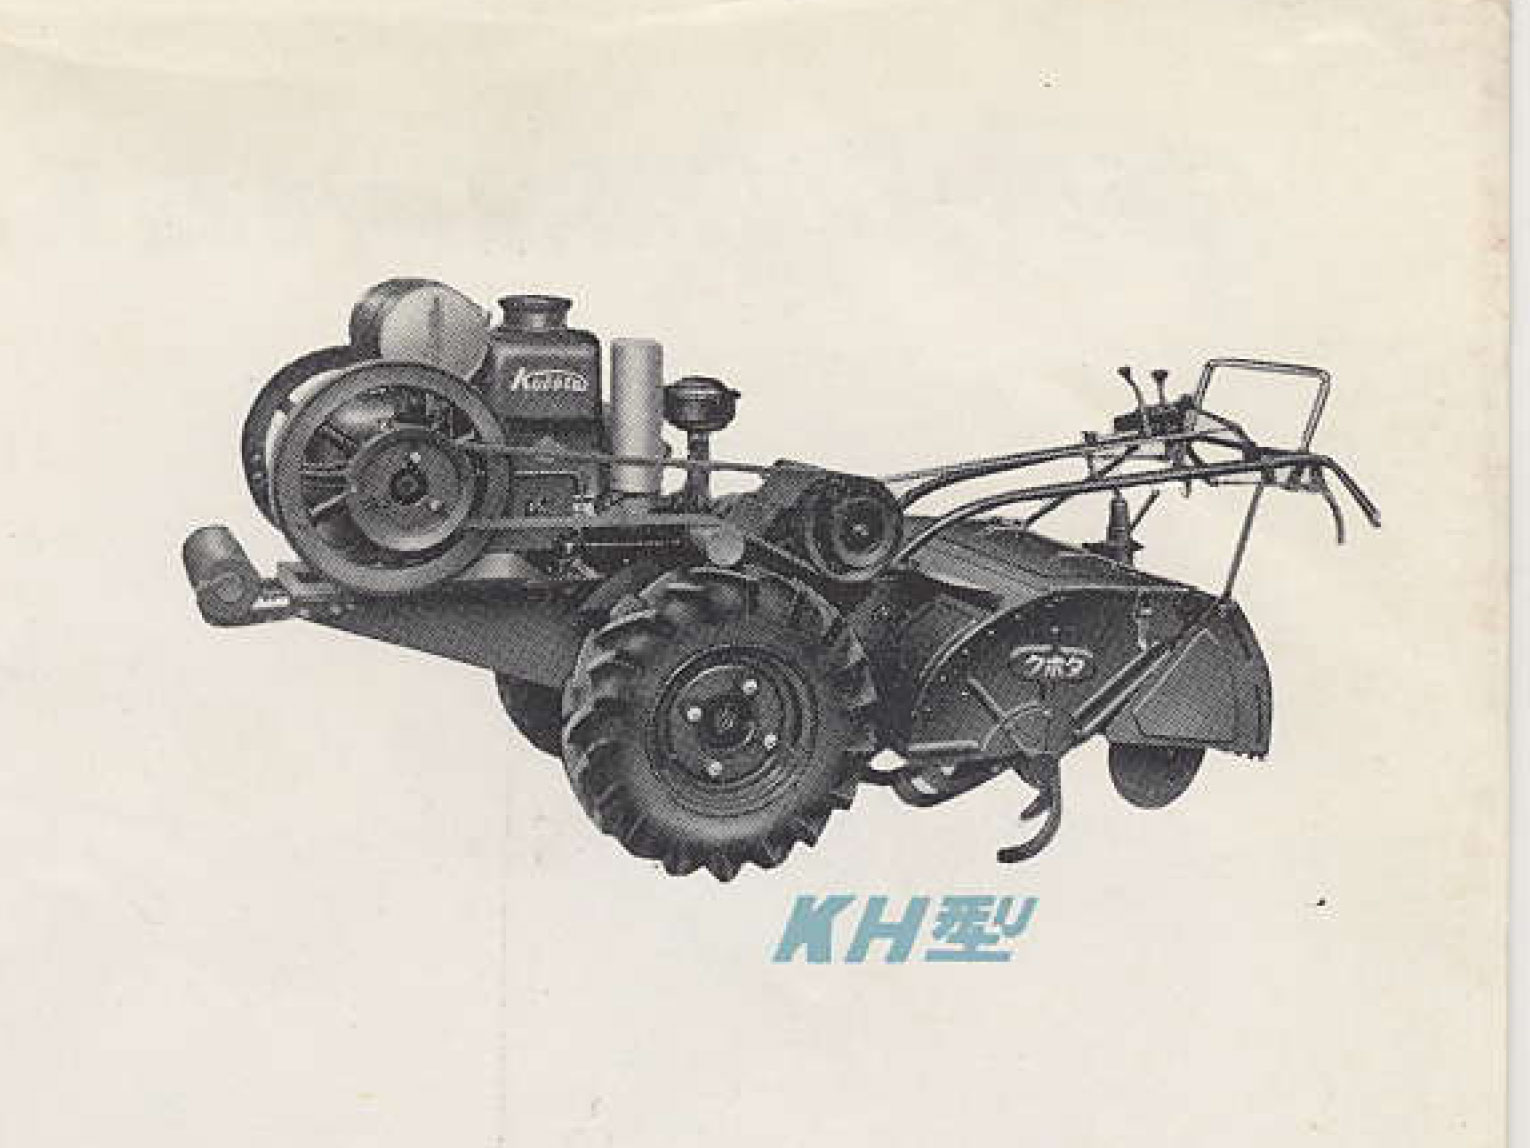 （農耕用小型特殊自動車表記）農1号はクボタ耕うん機KH型でした。国営検査1956（昭和31）年合格、型式認定が降りたのが19576（昭和32）年です。